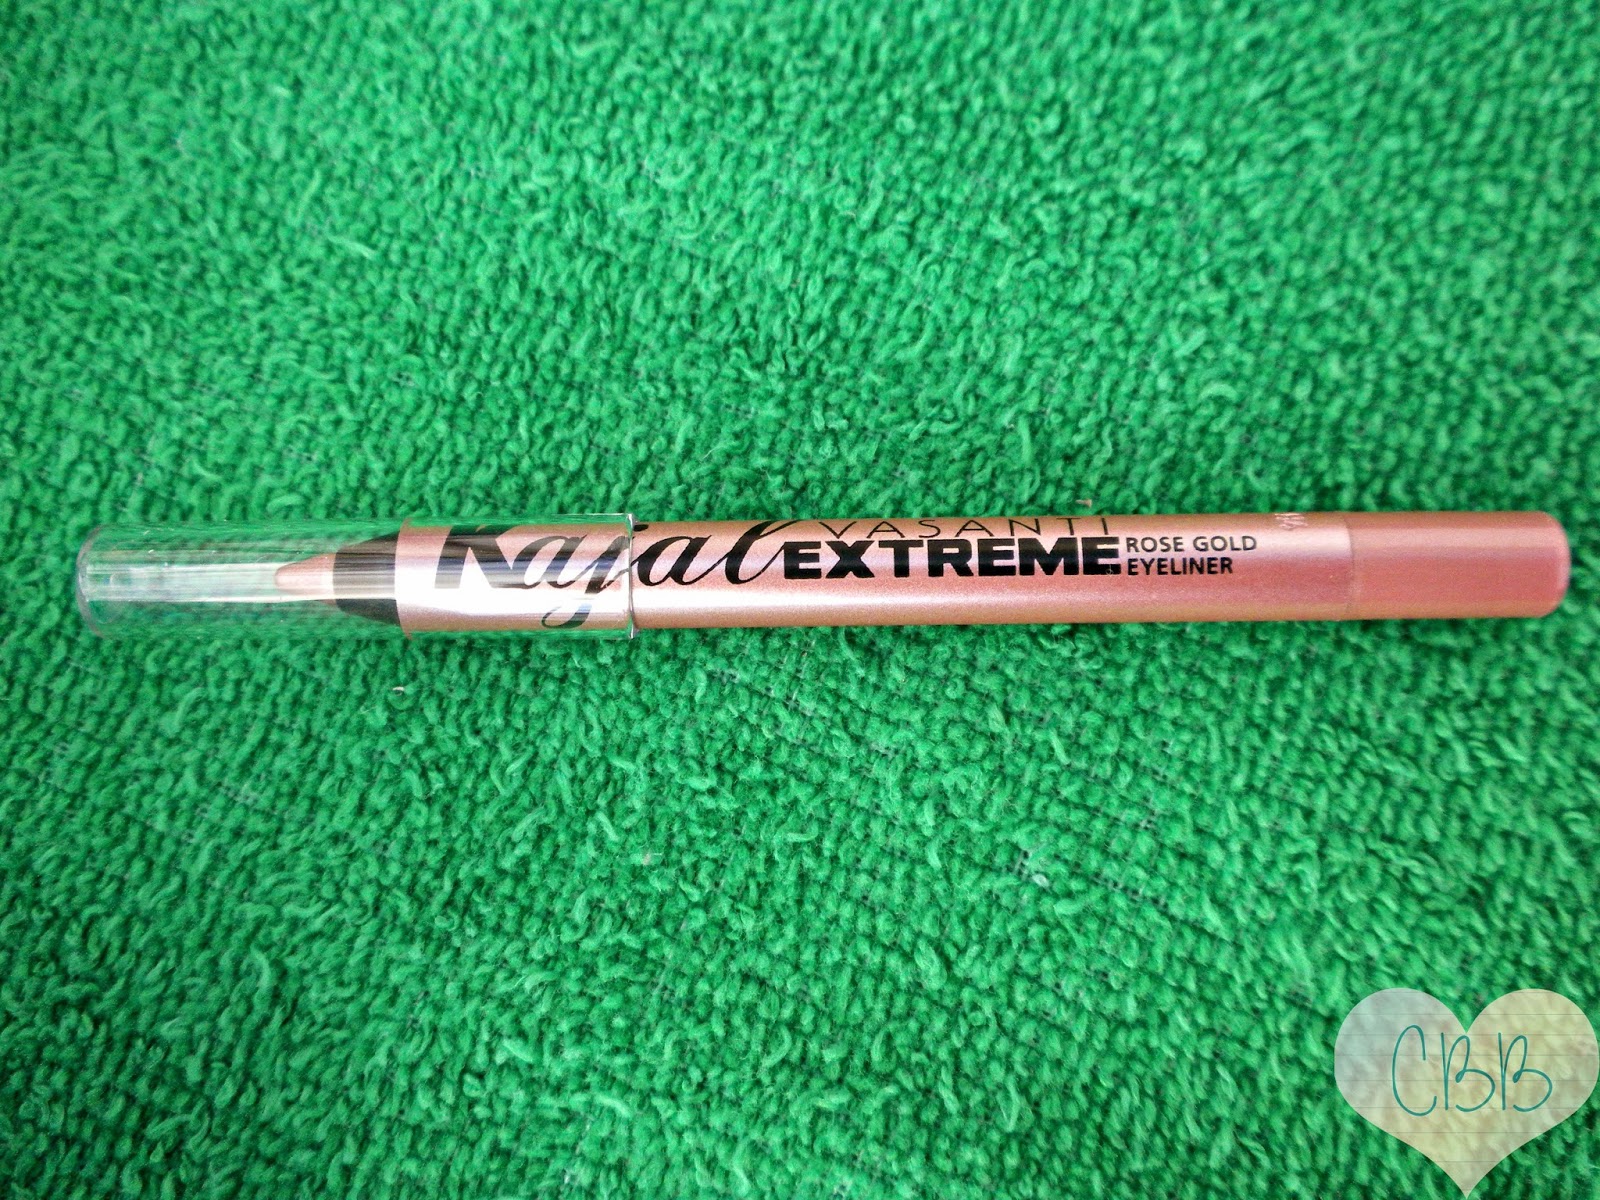 VASANTI COSMETICS Kajal Extreme Intense Eye Pencil in Rose Gold